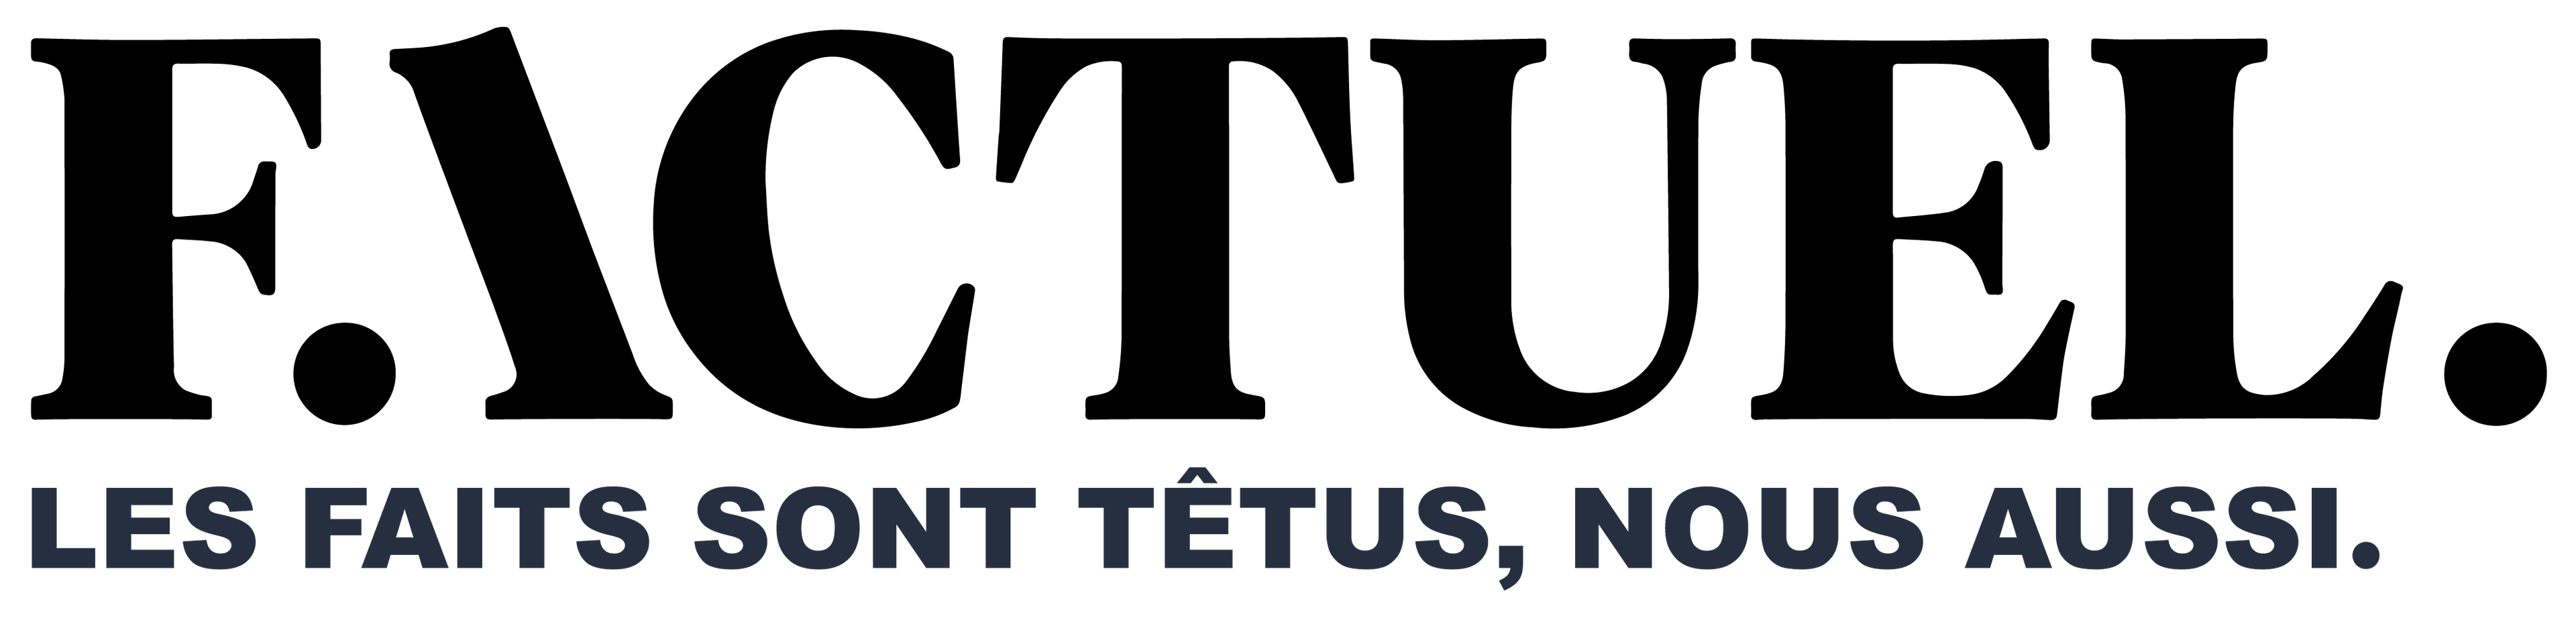 logo Factuel